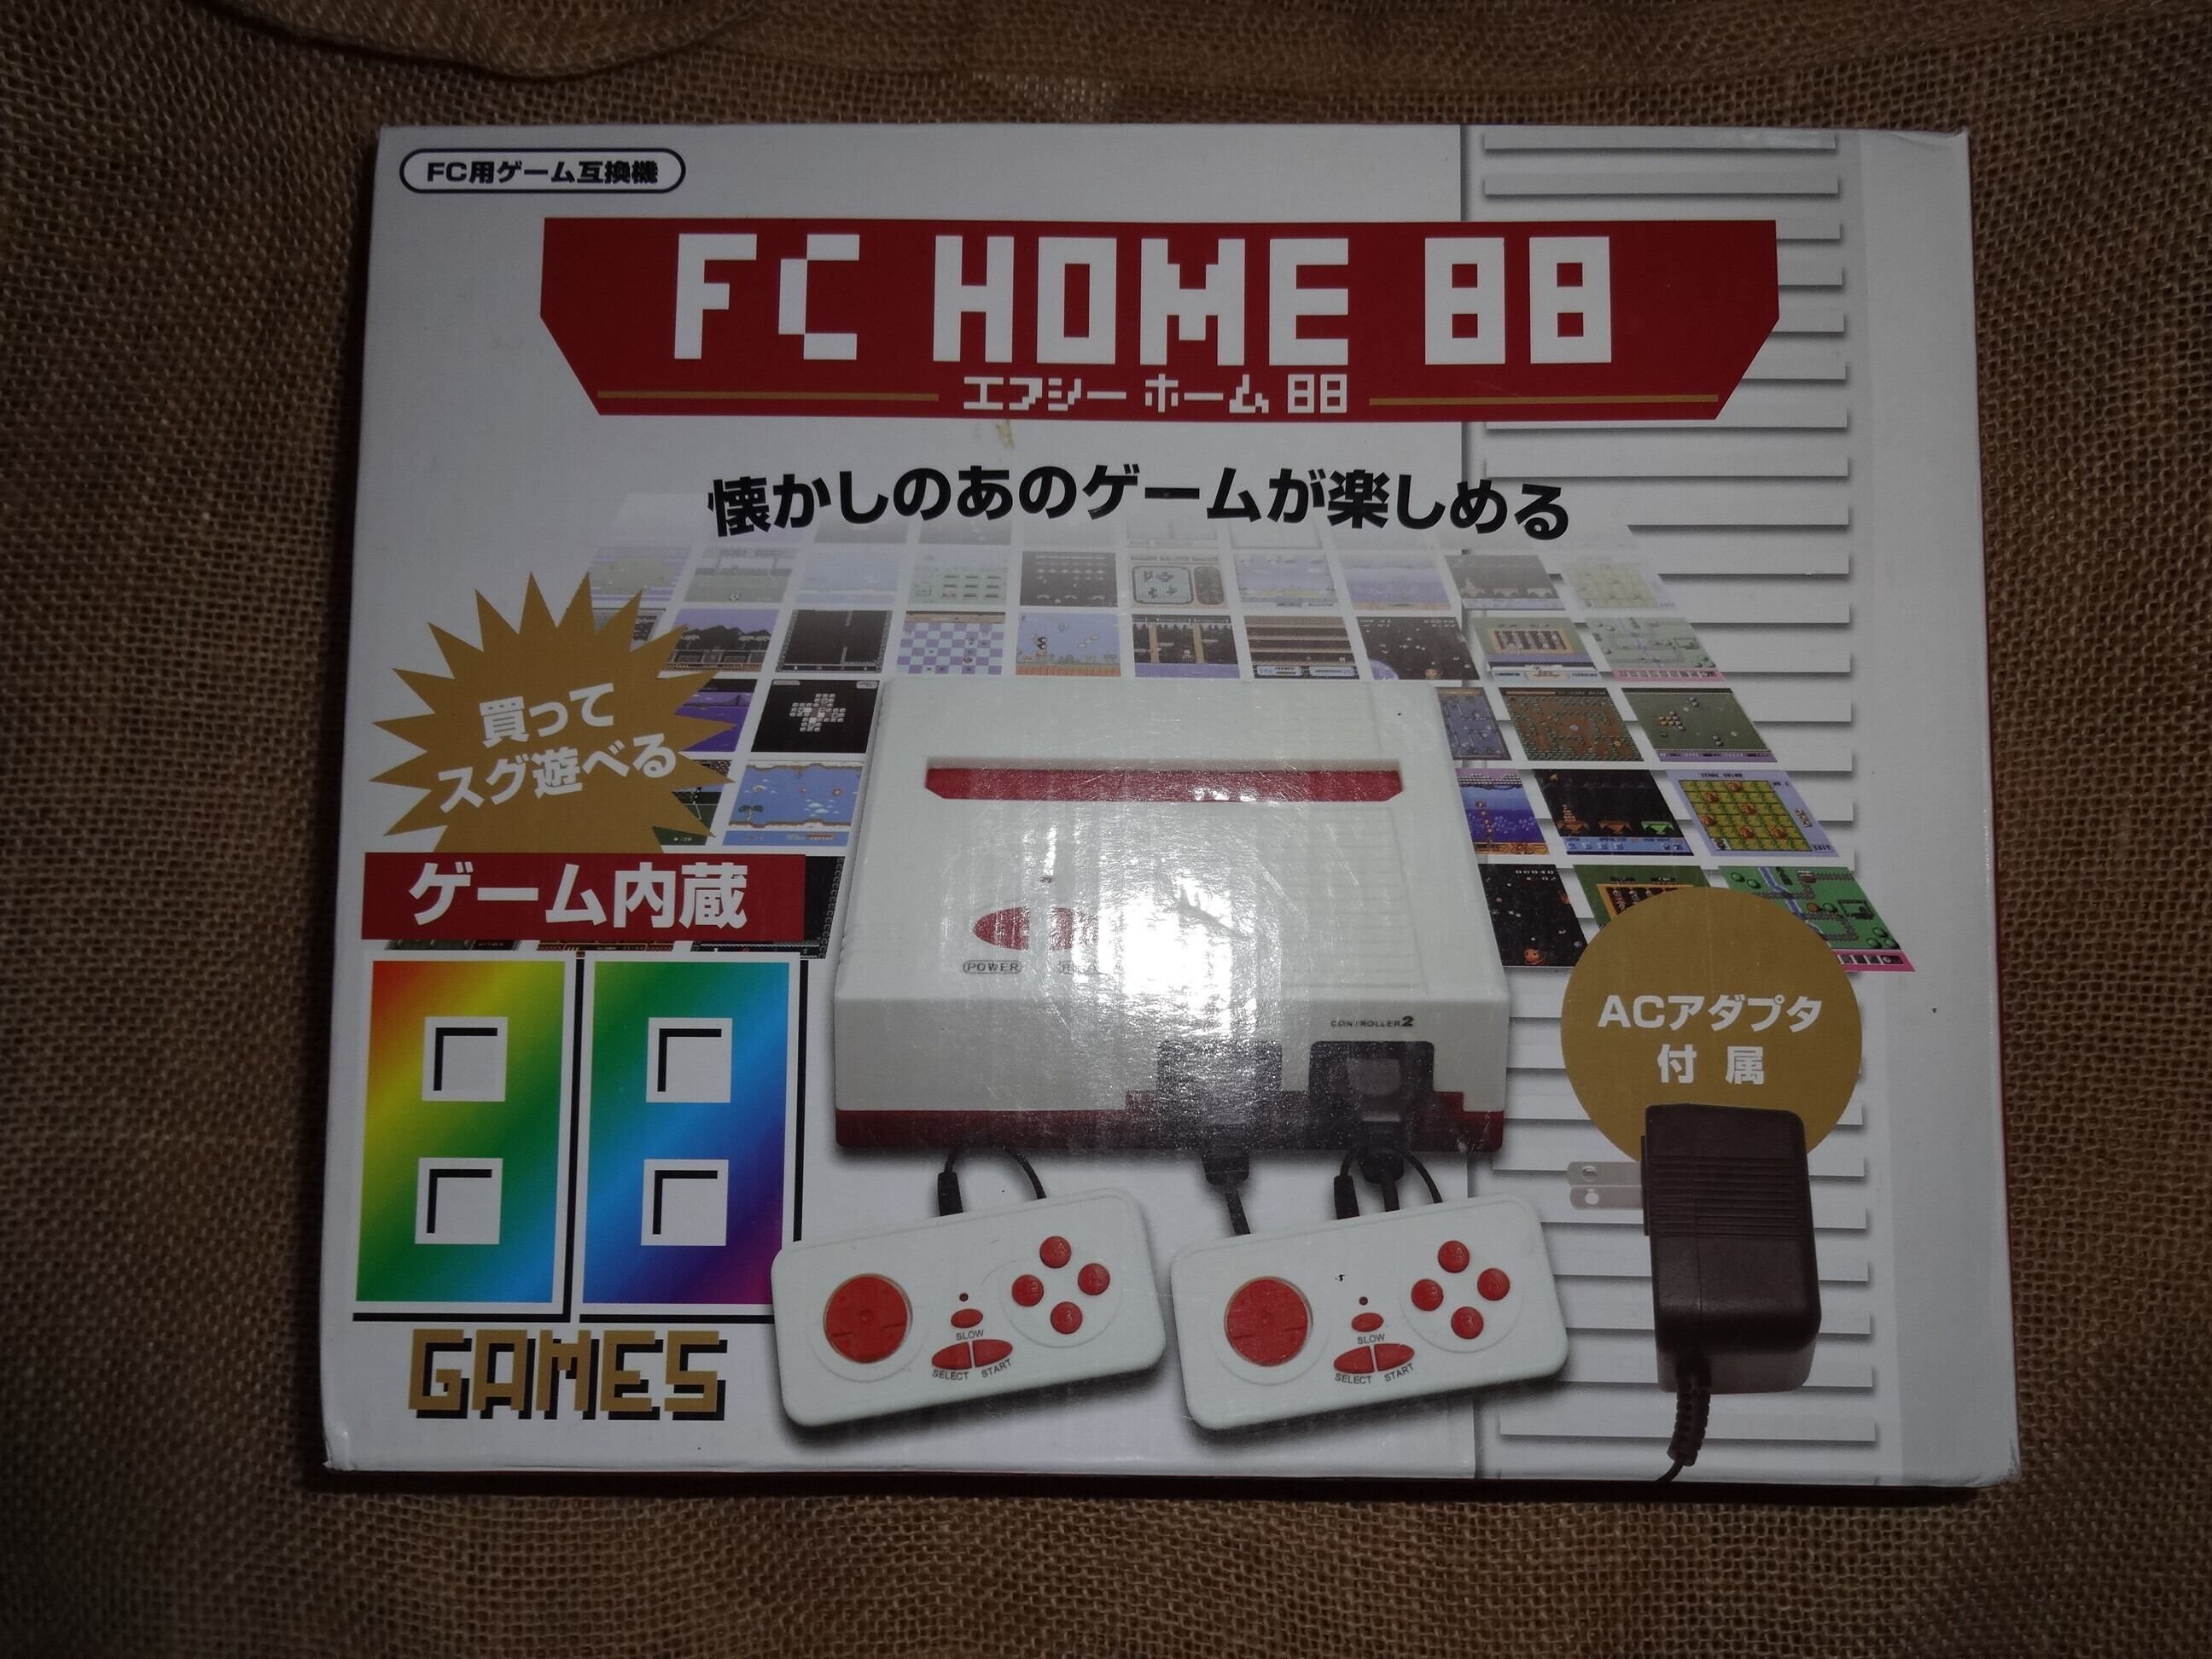  FC Home 88 Famiclone Console